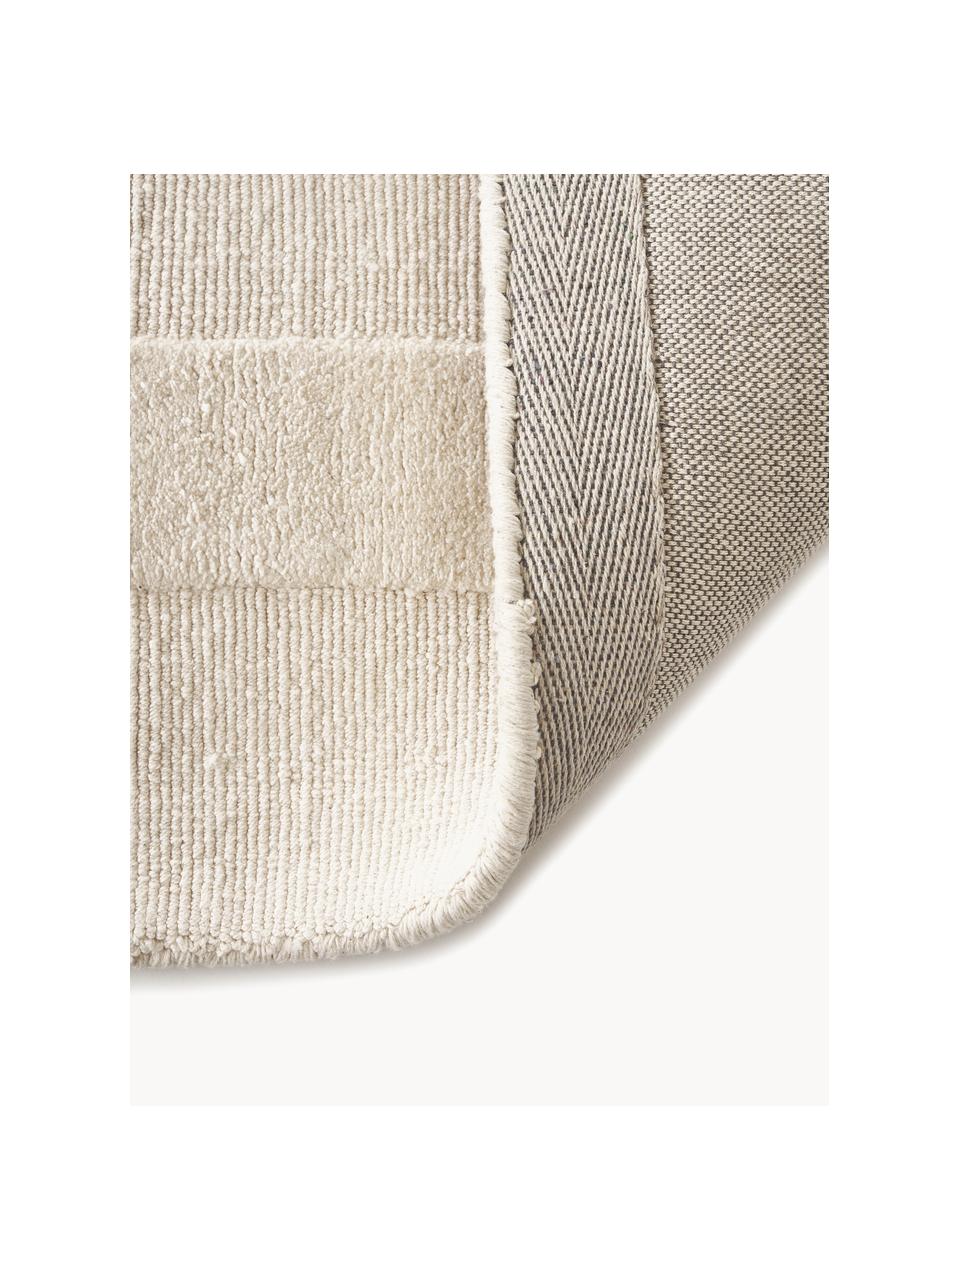 Alfombra artesanal de algodón texturizada Dania, 100% algodón con certificado GRS, Blanco crema, An 200 x L 300 cm (Tamaño L)